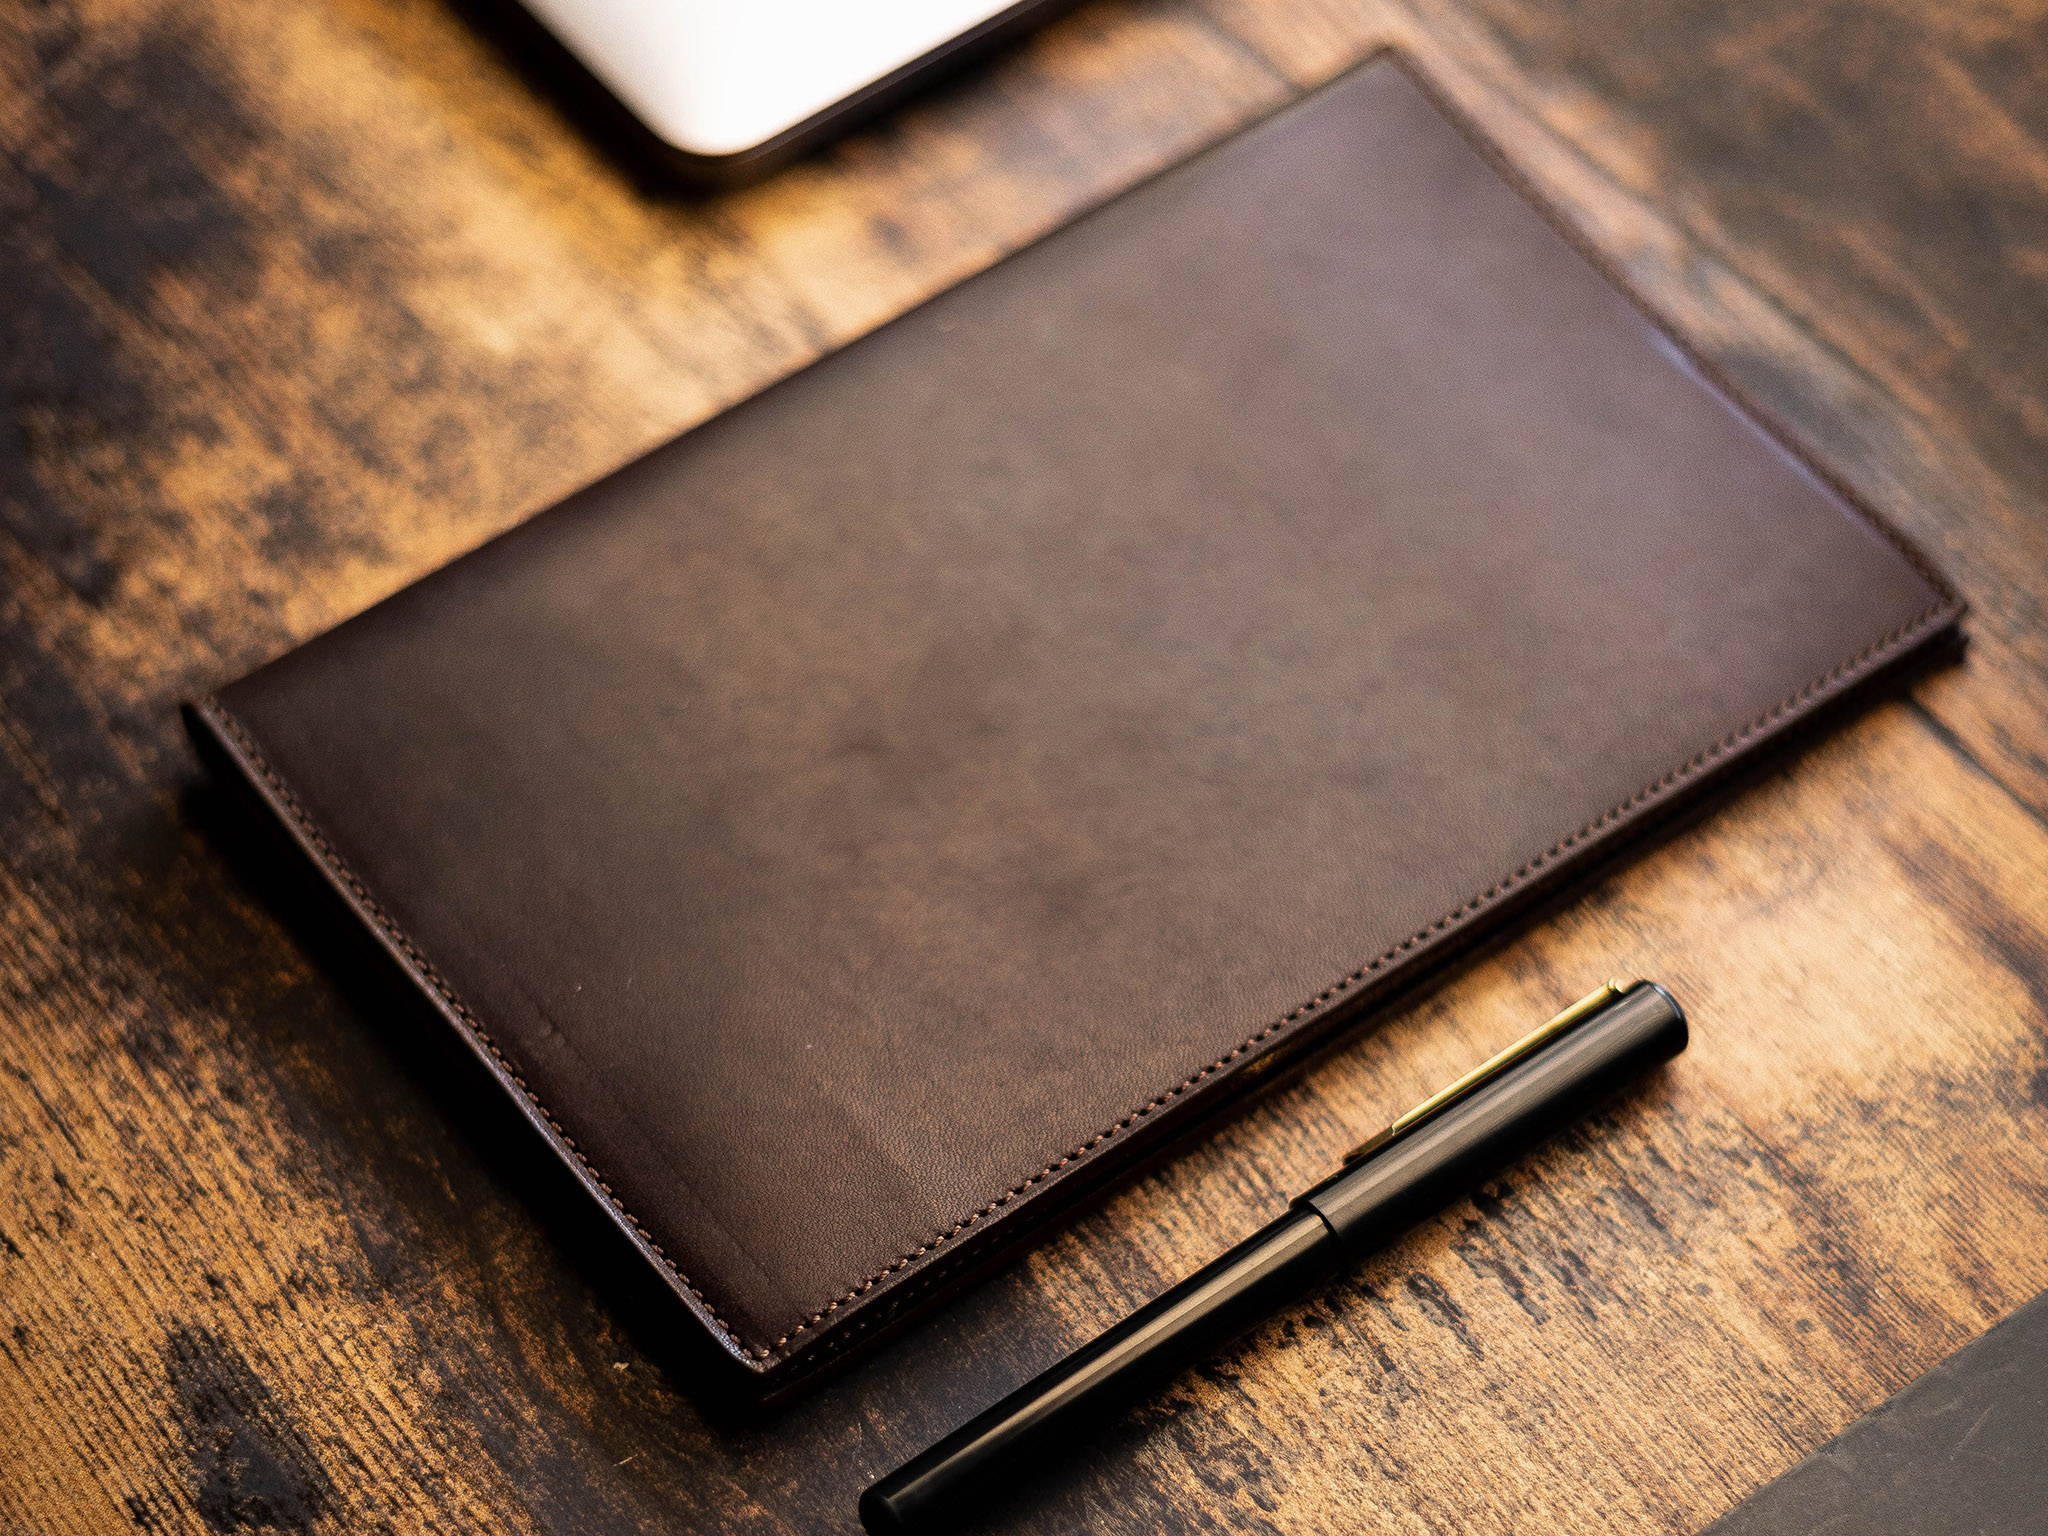 antique vintage design sketchbook,wrinkled leather notebook,handmade journal,leather bound journal,leather journal.Handmade Small leather journal notebook, 